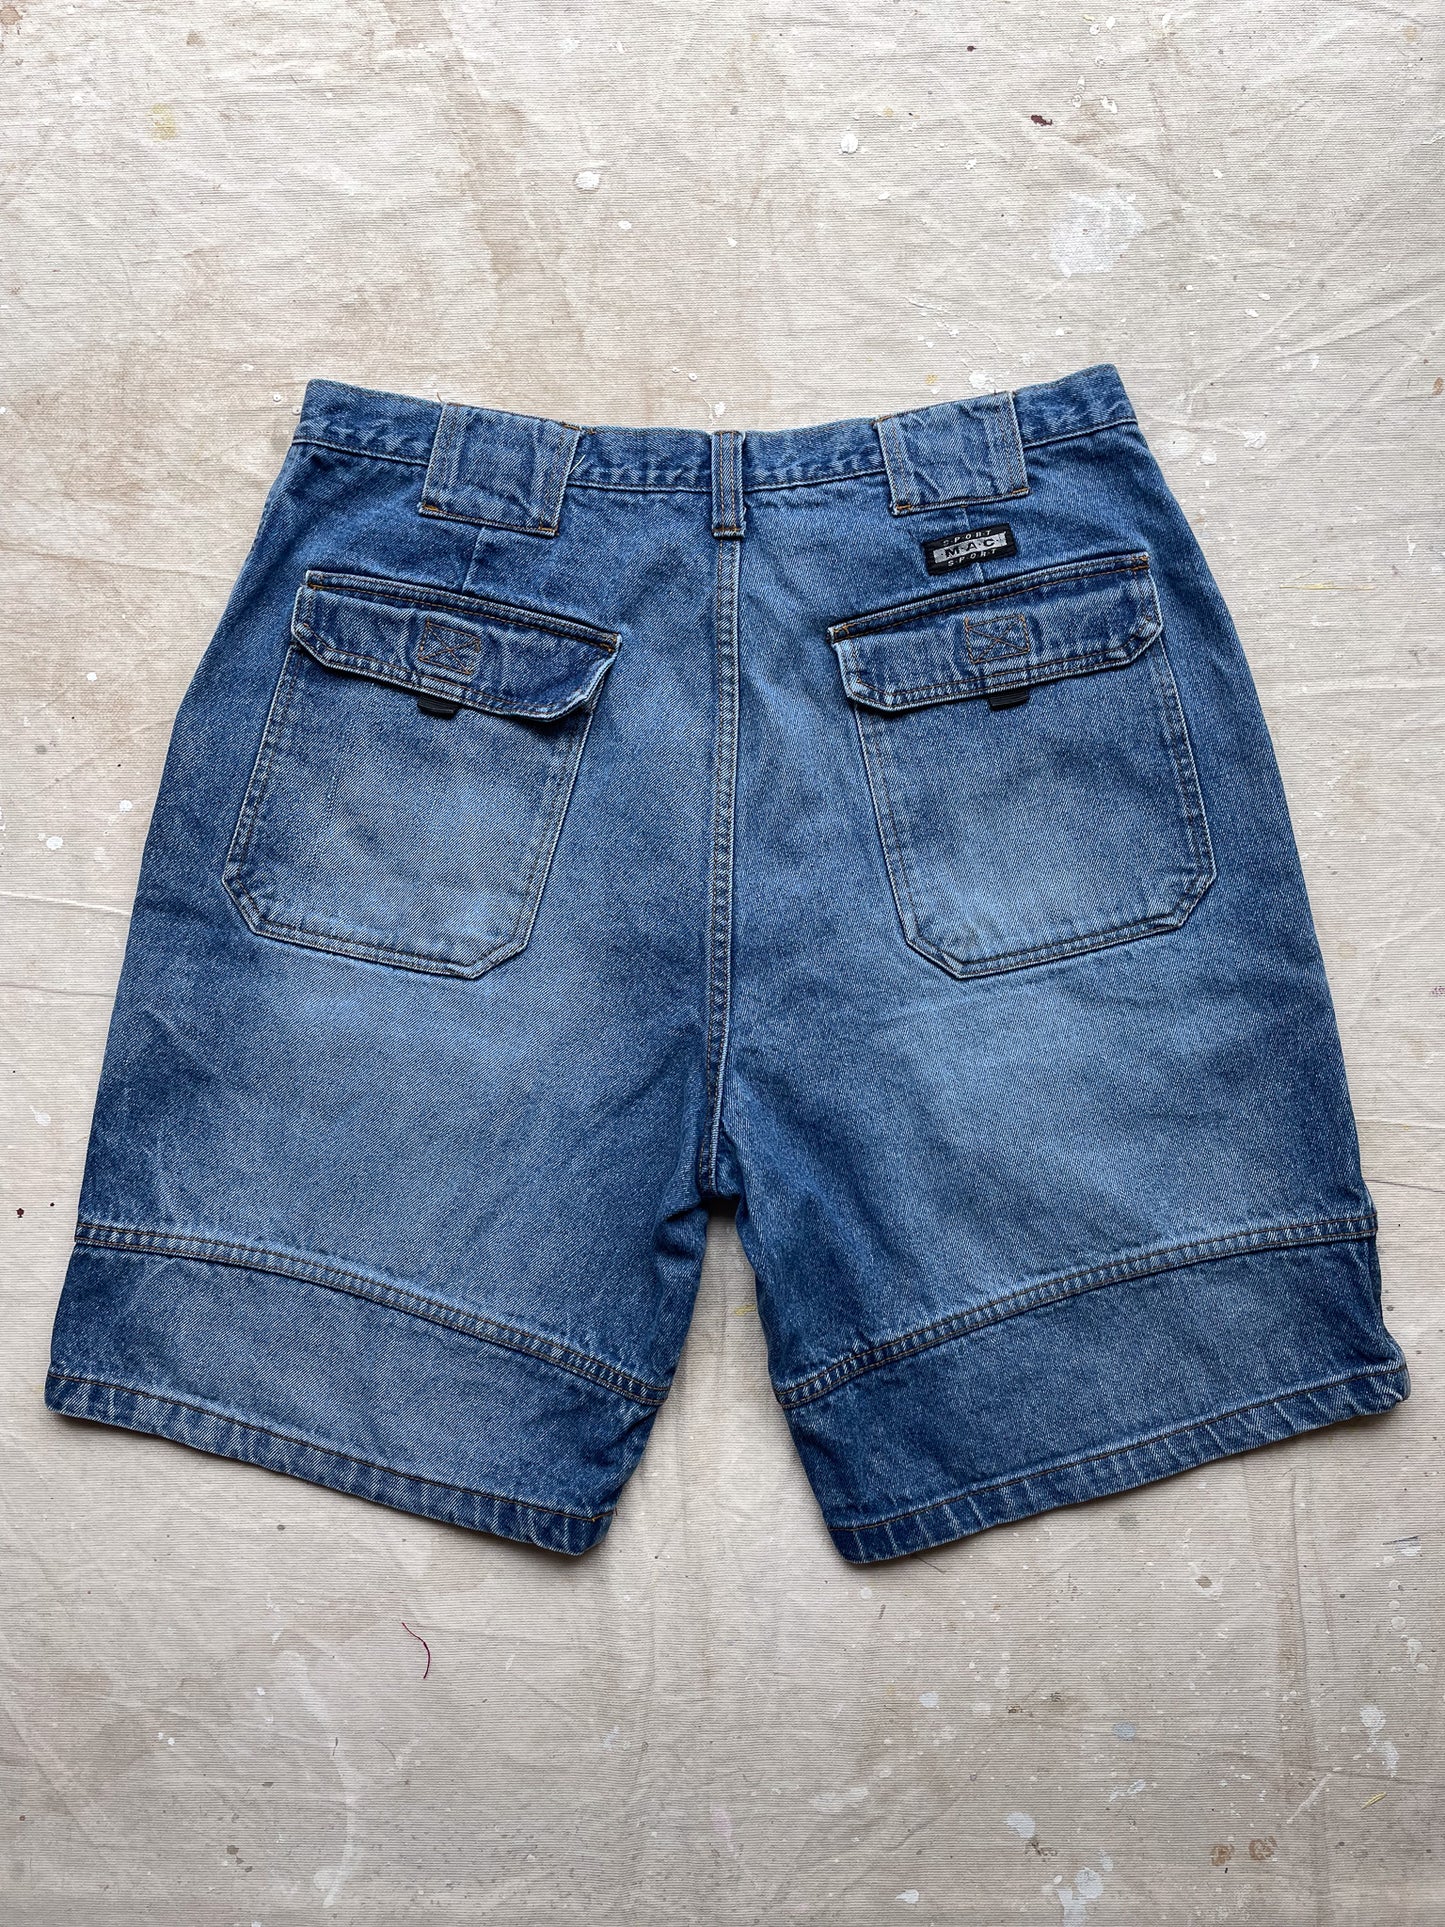 MAC Jean Shorts—[38]